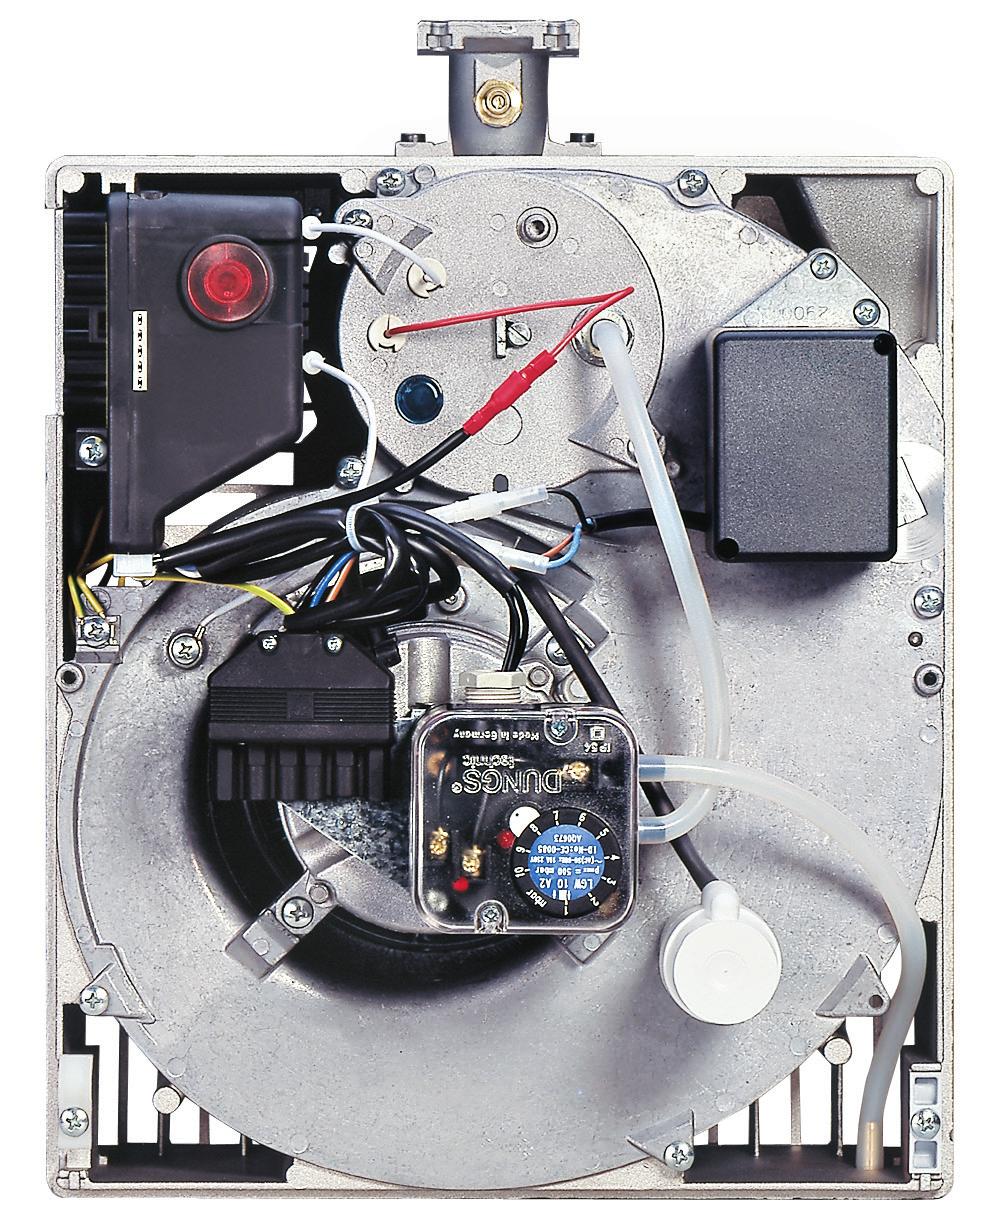 Il bruciatore è dotato di un pressostato aria, in conformità agli standard EN 676.